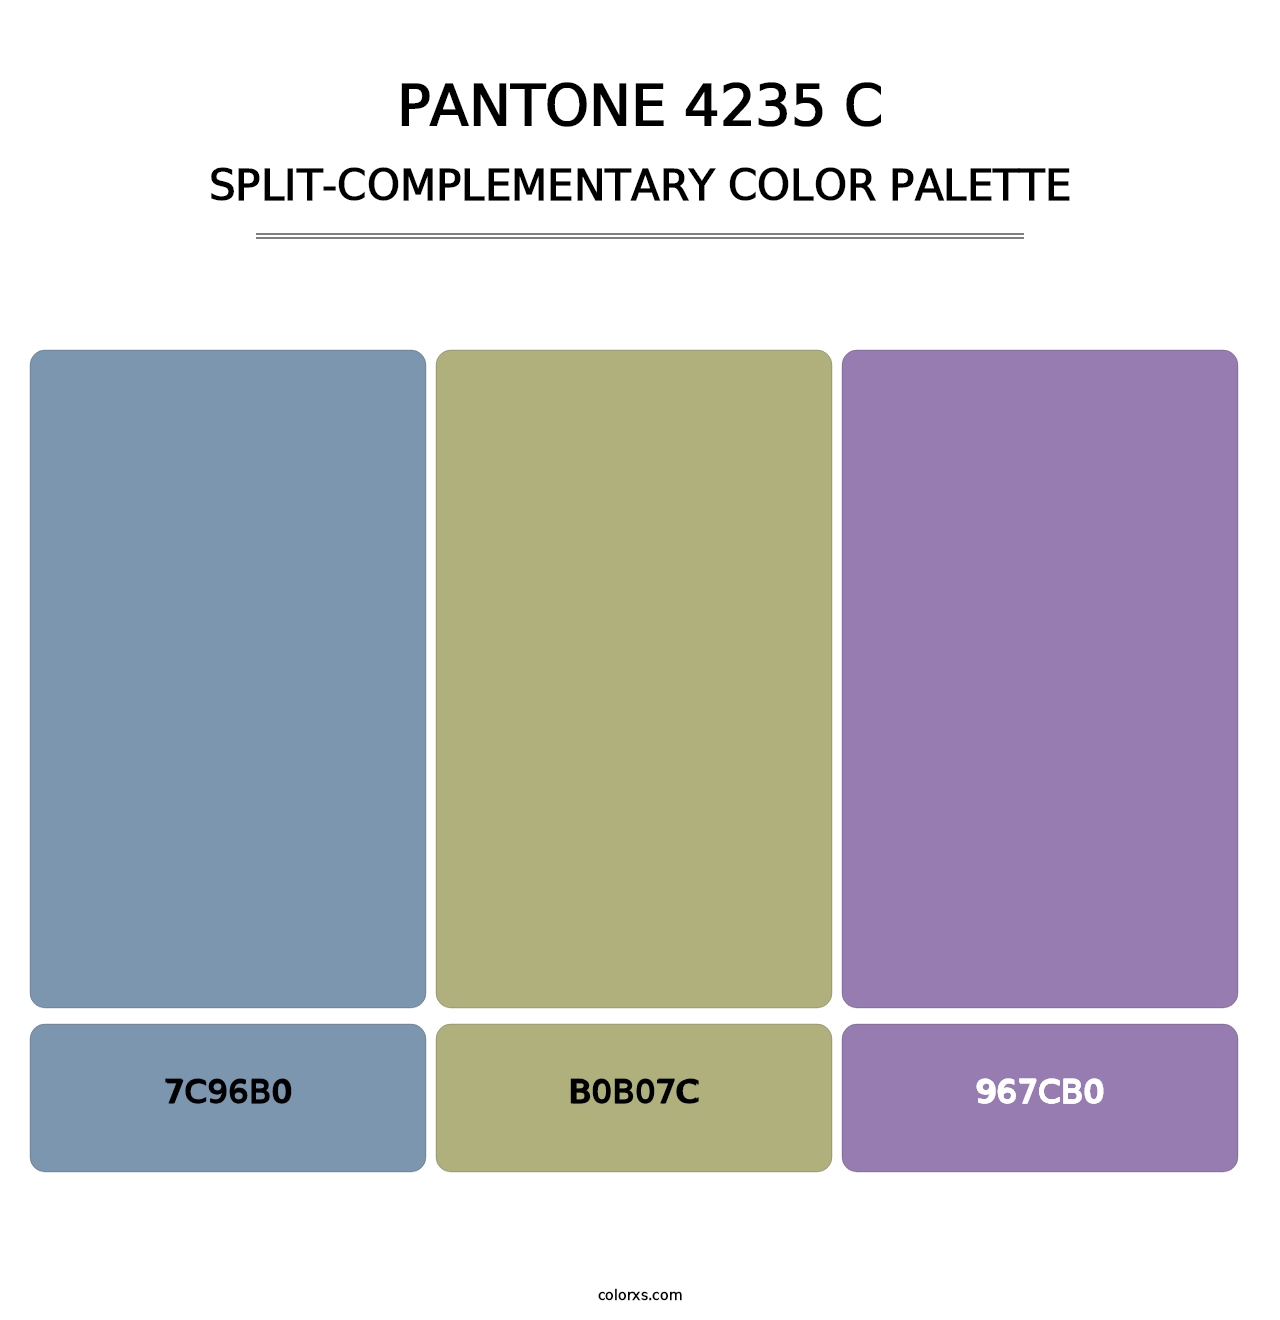 PANTONE 4235 C - Split-Complementary Color Palette